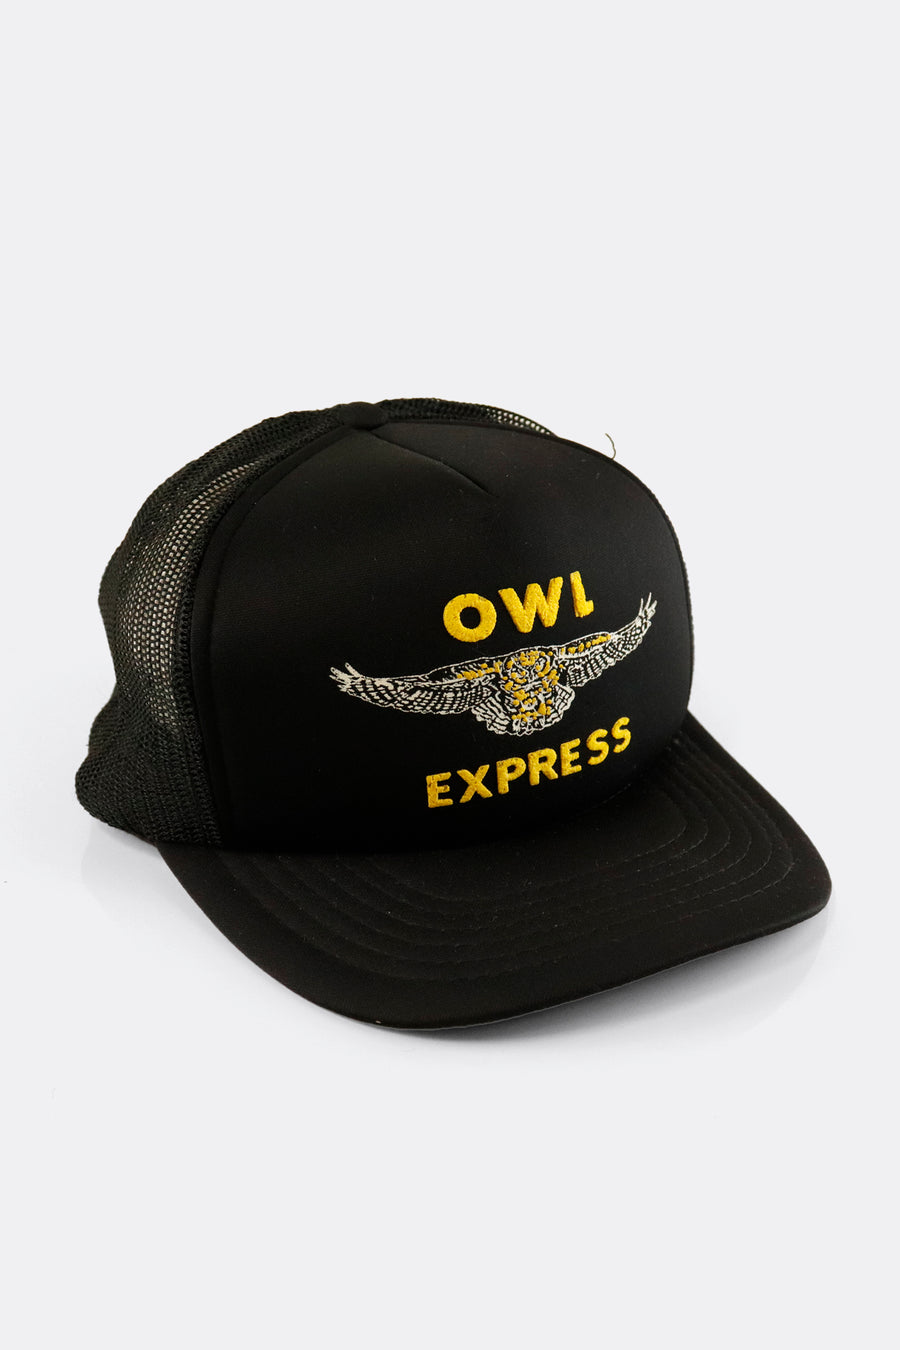 Vintage OWL Express Mesh Snapback Hat